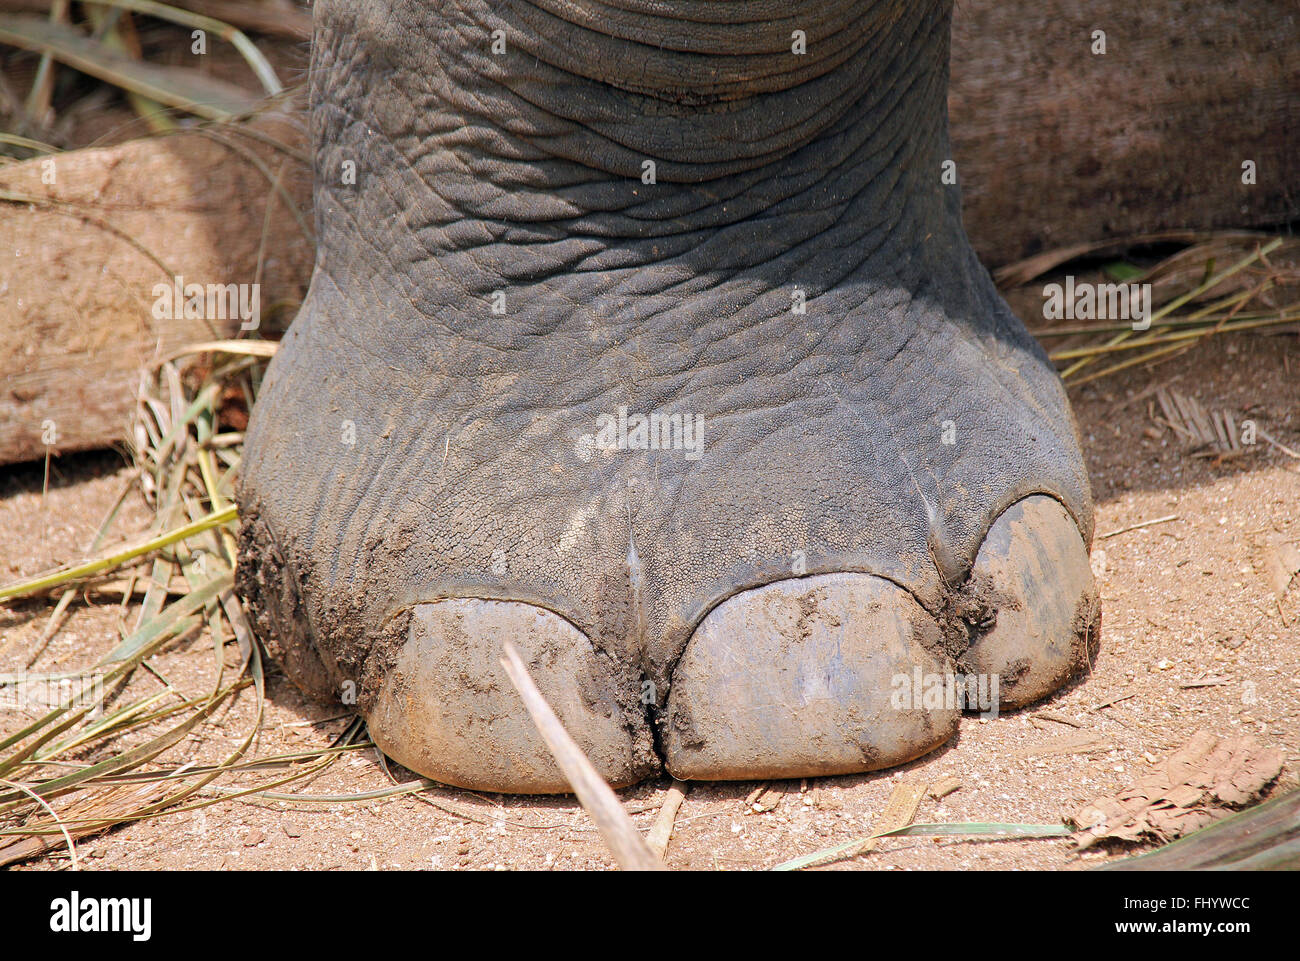 Gros plan d'un pied d'éléphant. Pinnawela, Sri Lanka Banque D'Images